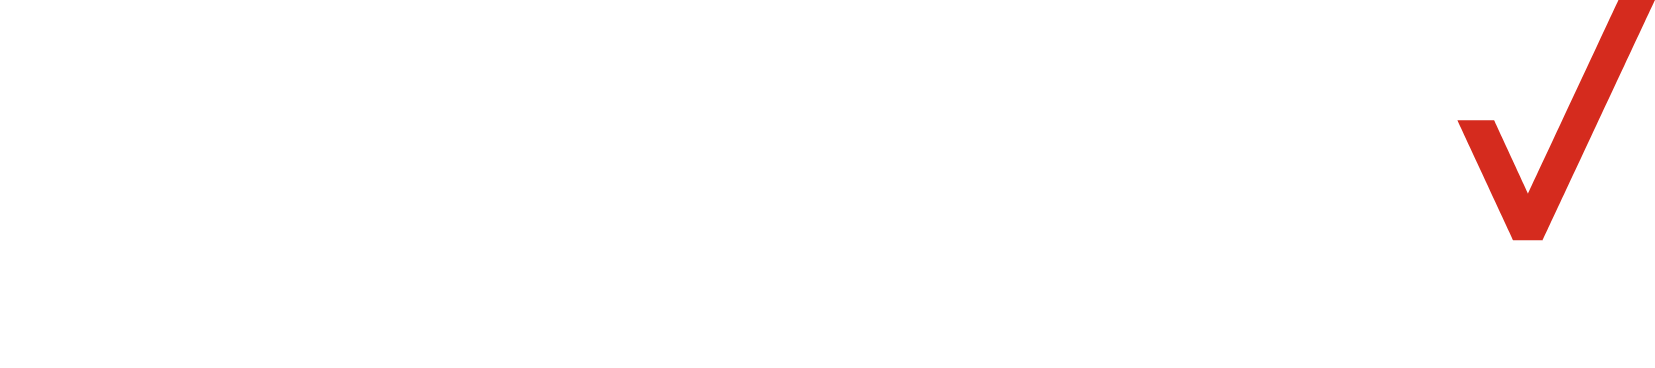 Verizon logo large for dark backgrounds (transparent PNG)